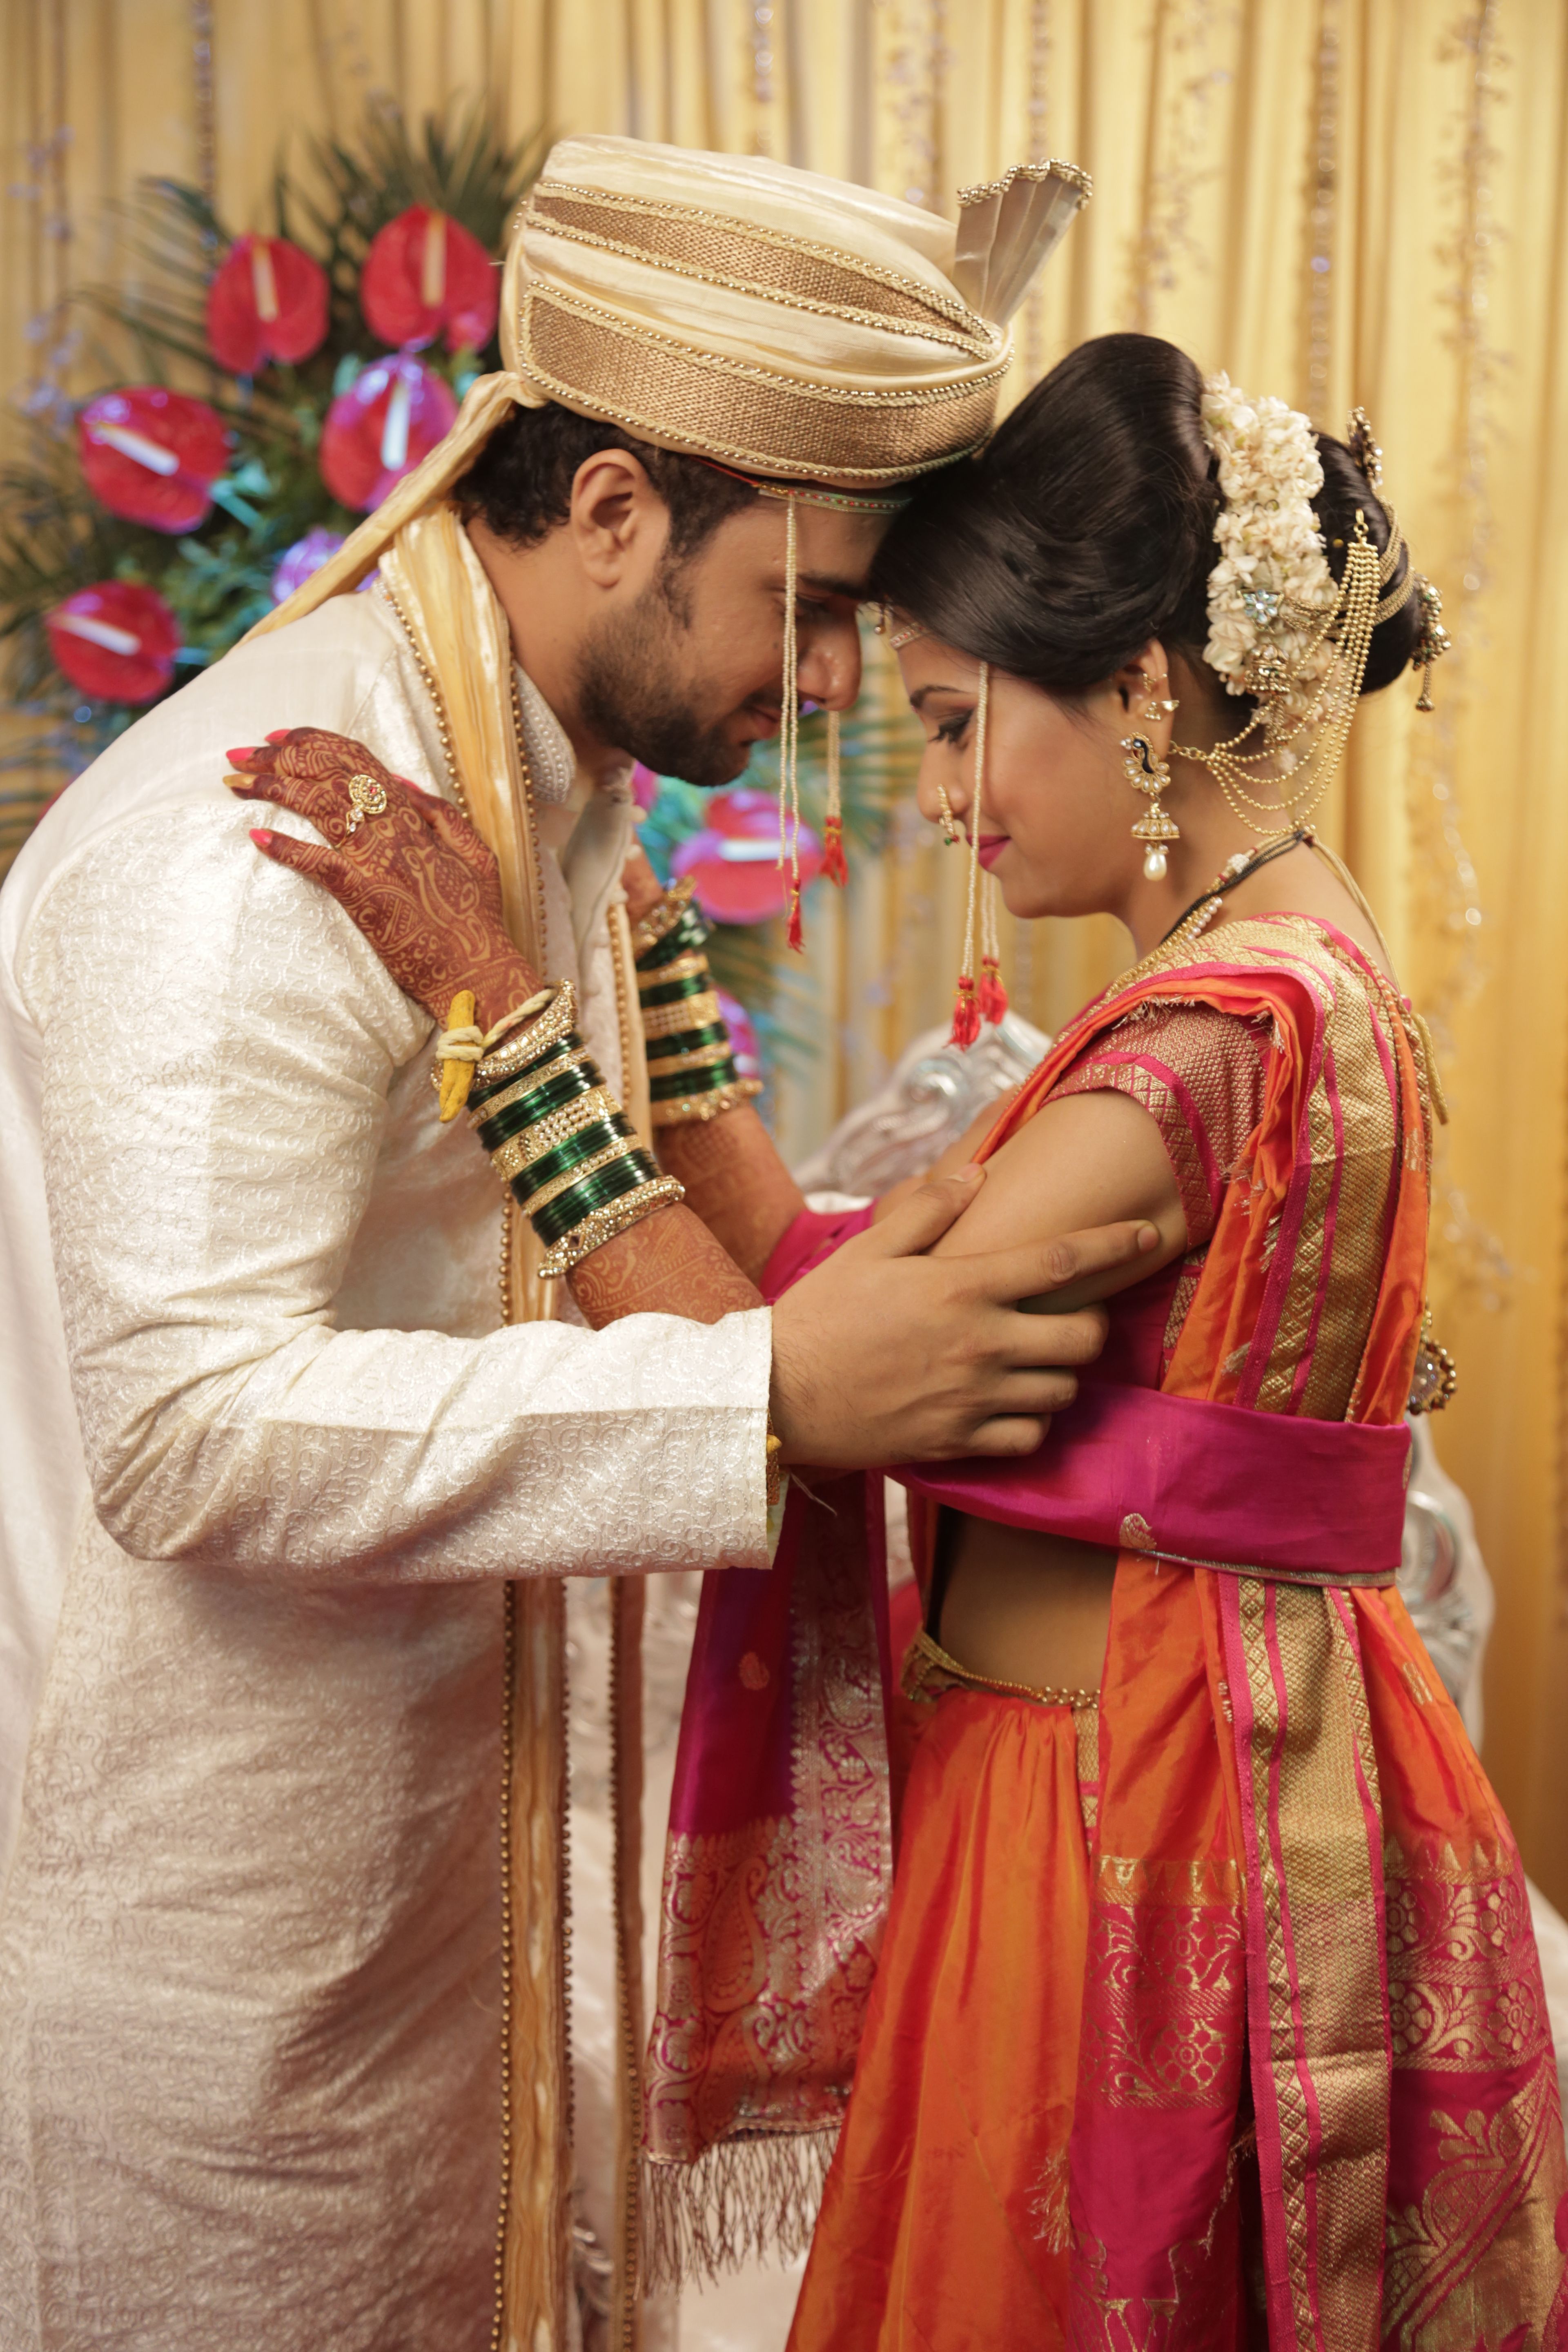 Marathi Couple. Indian wedding poses, Groom photohoot, Indian wedding